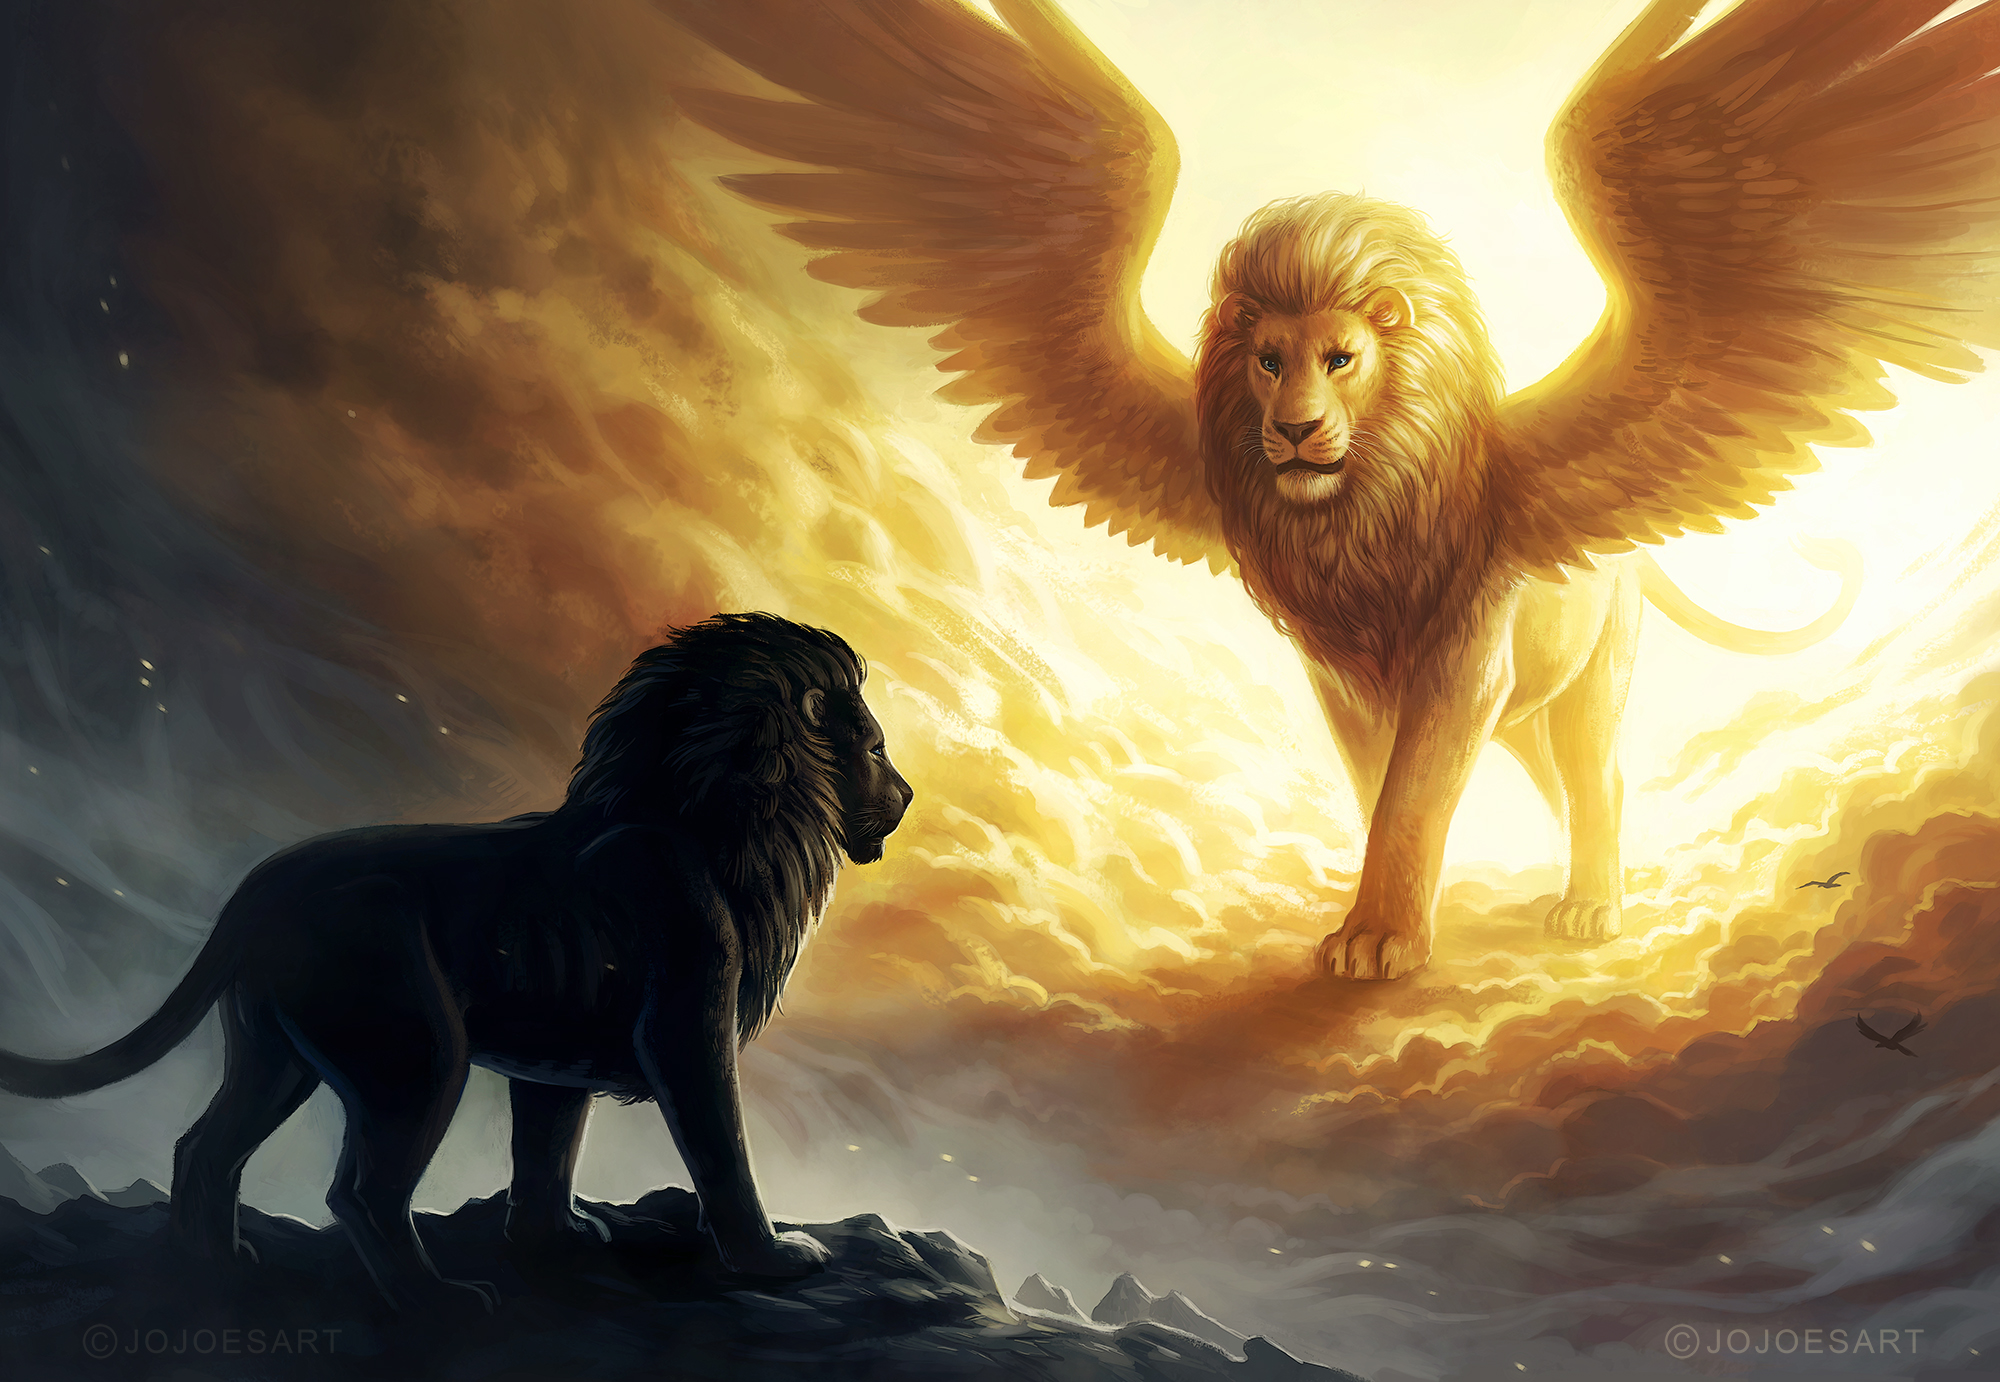 Lion King Spiritual Dark Fantasy, HD Animals, 4k Wallpapers, Images